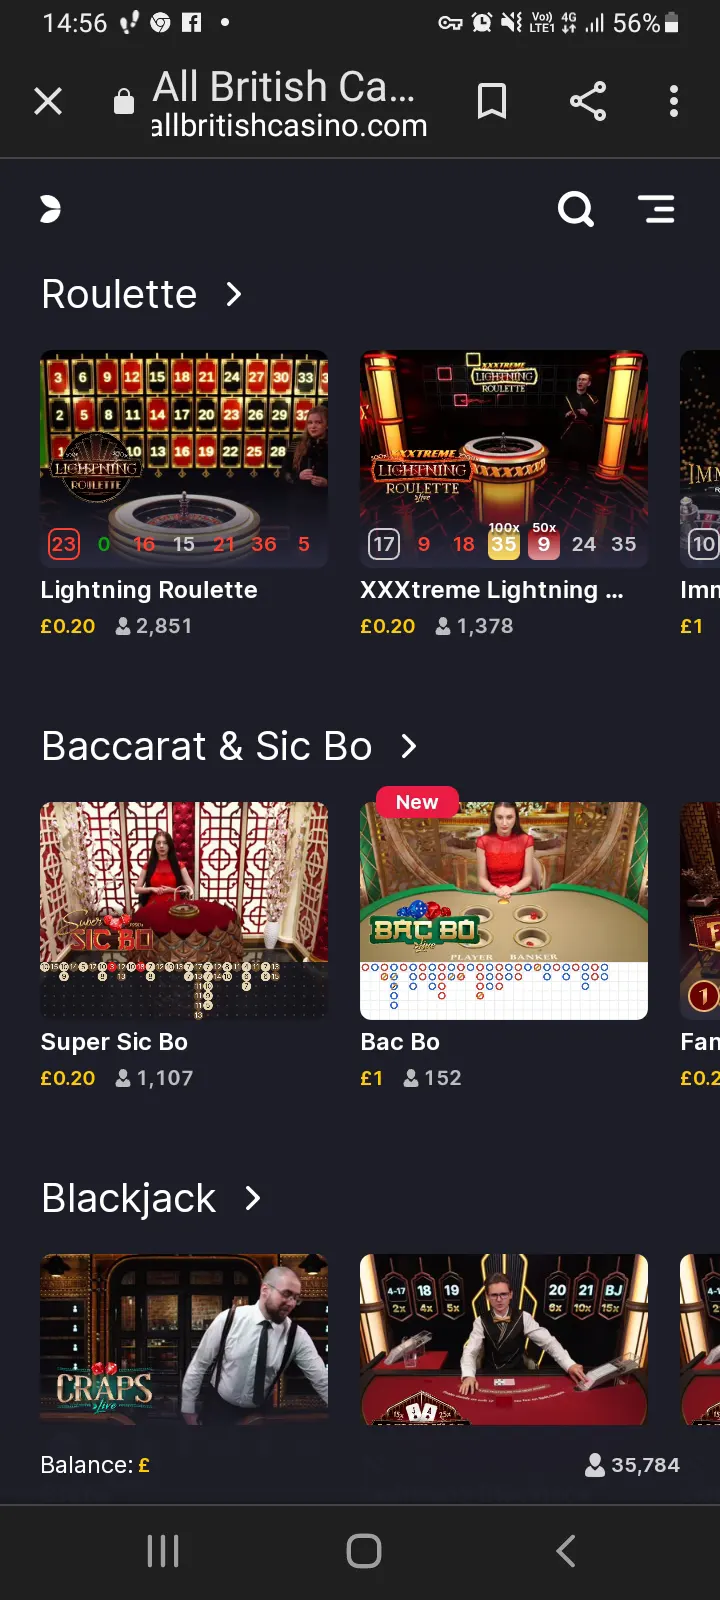 All British casino app screenshot 7